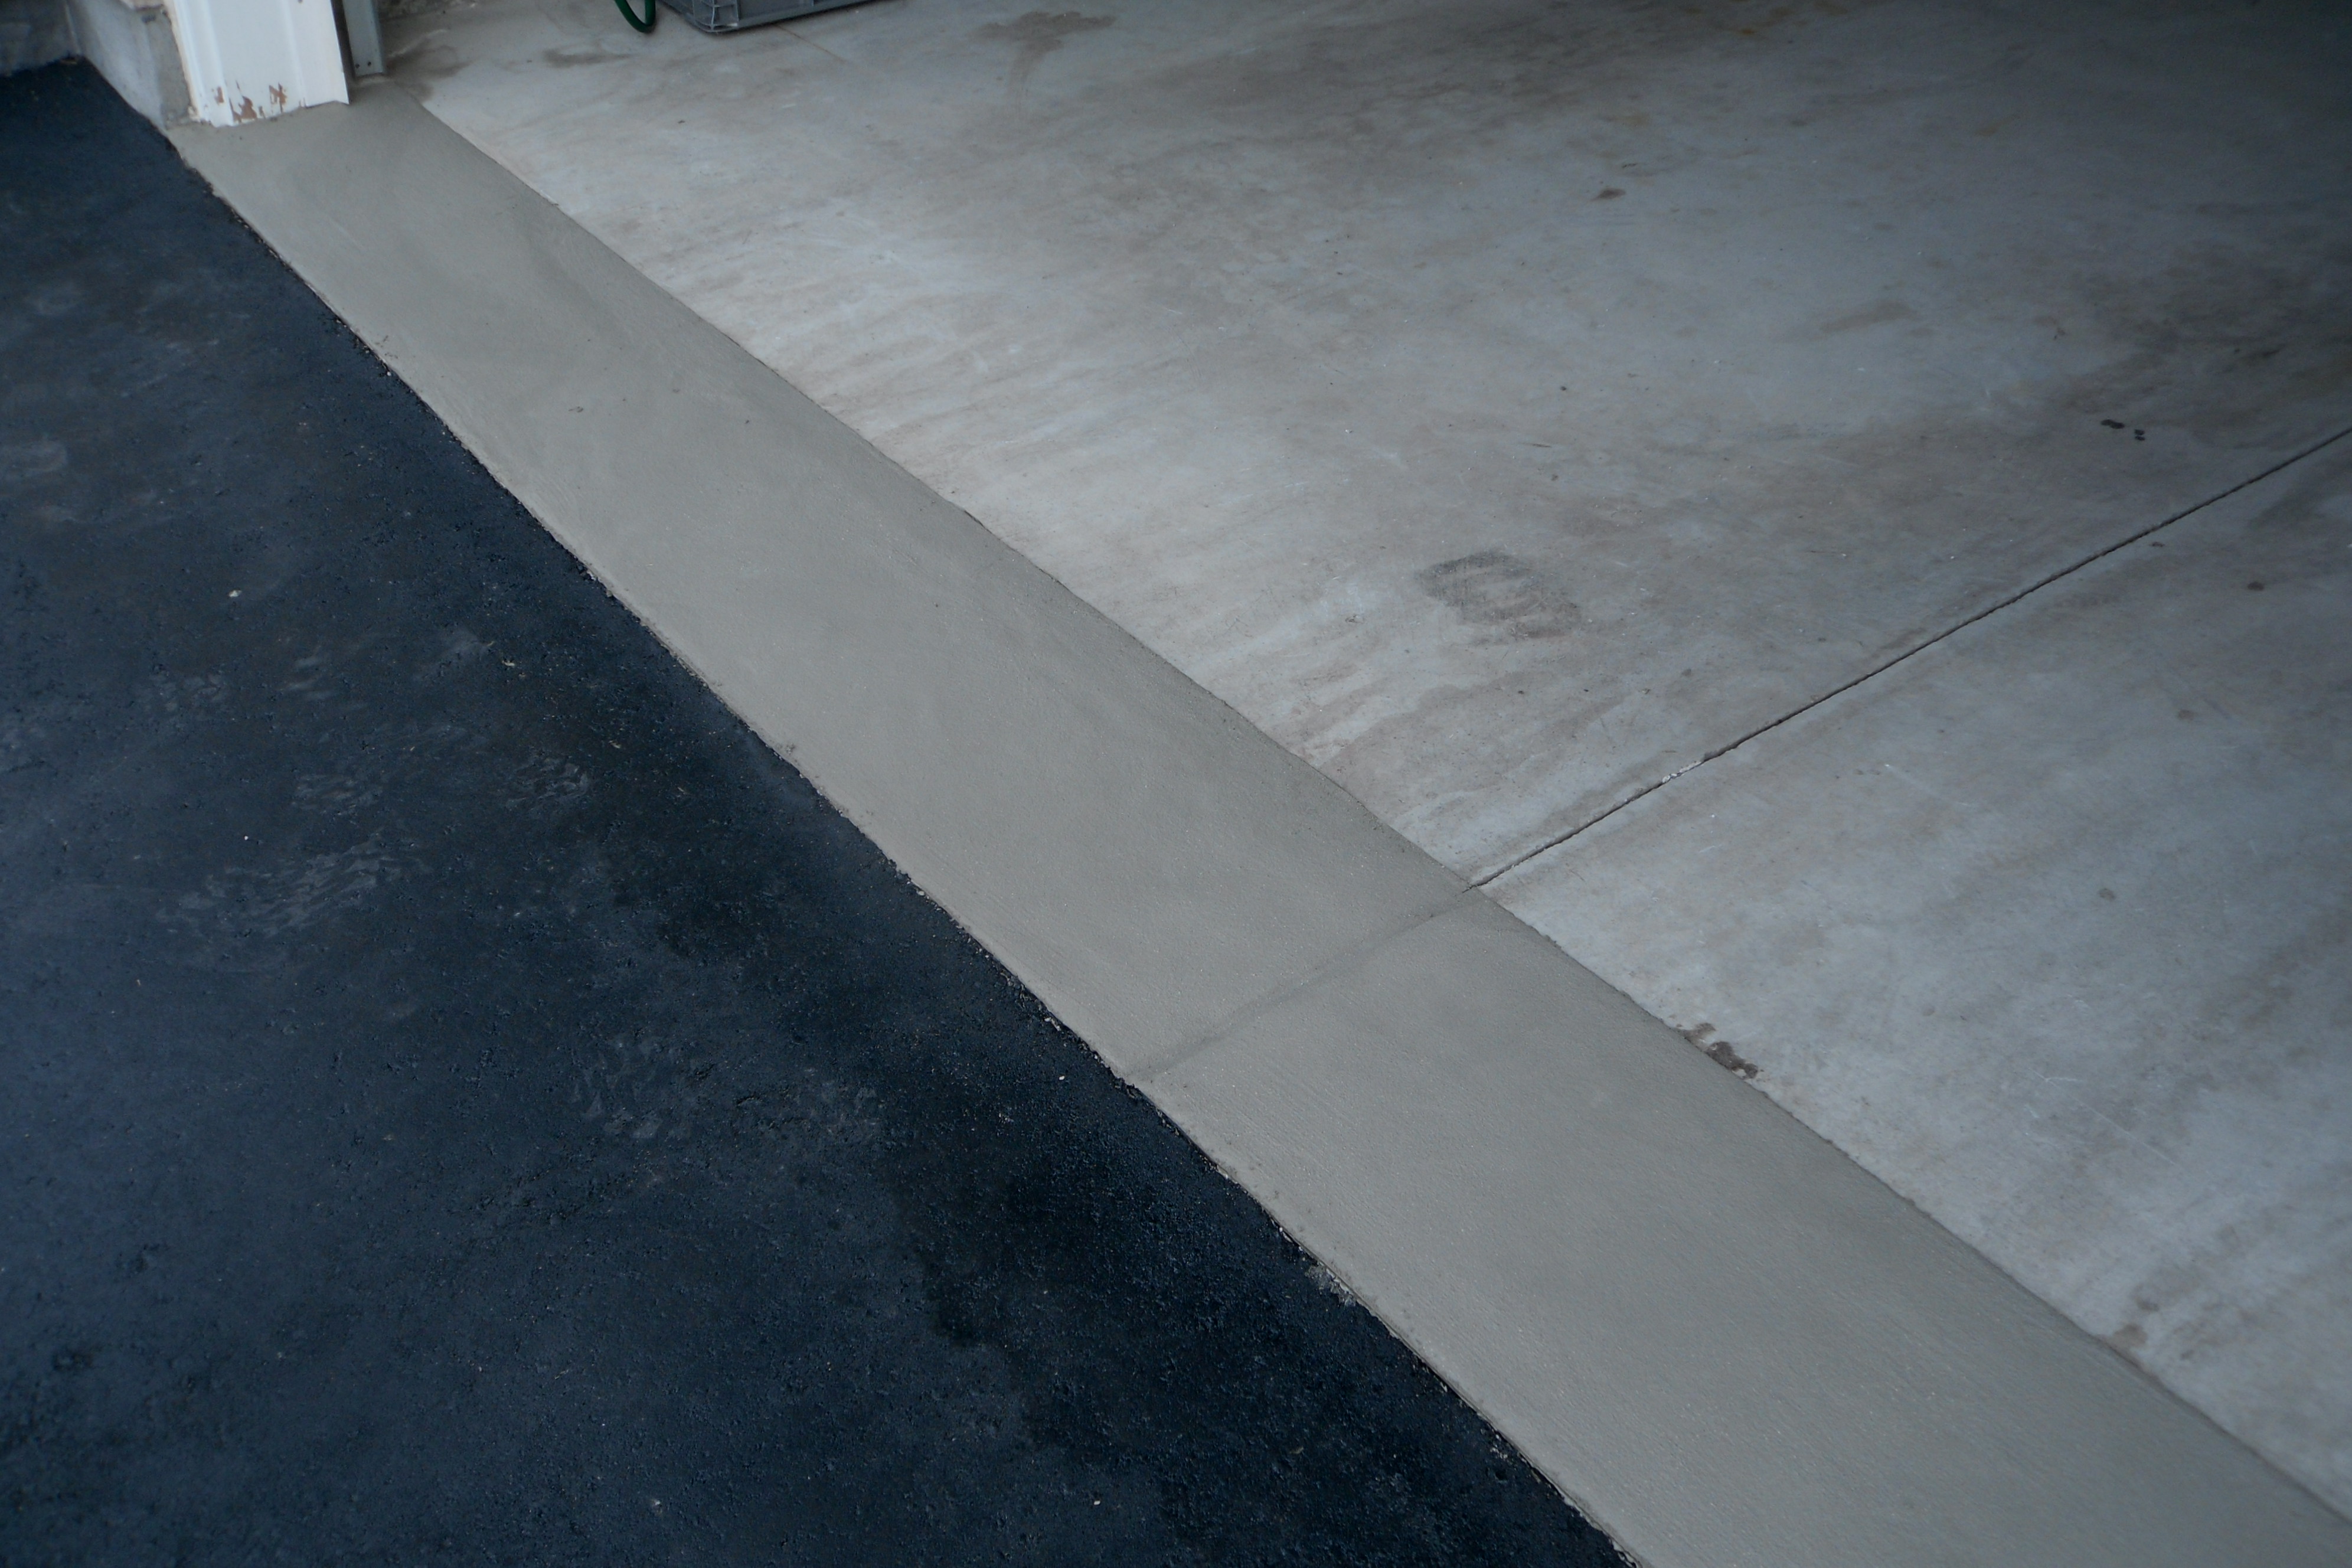 Garage Floor Resurfacing Tybo Concrete Coatings Repair